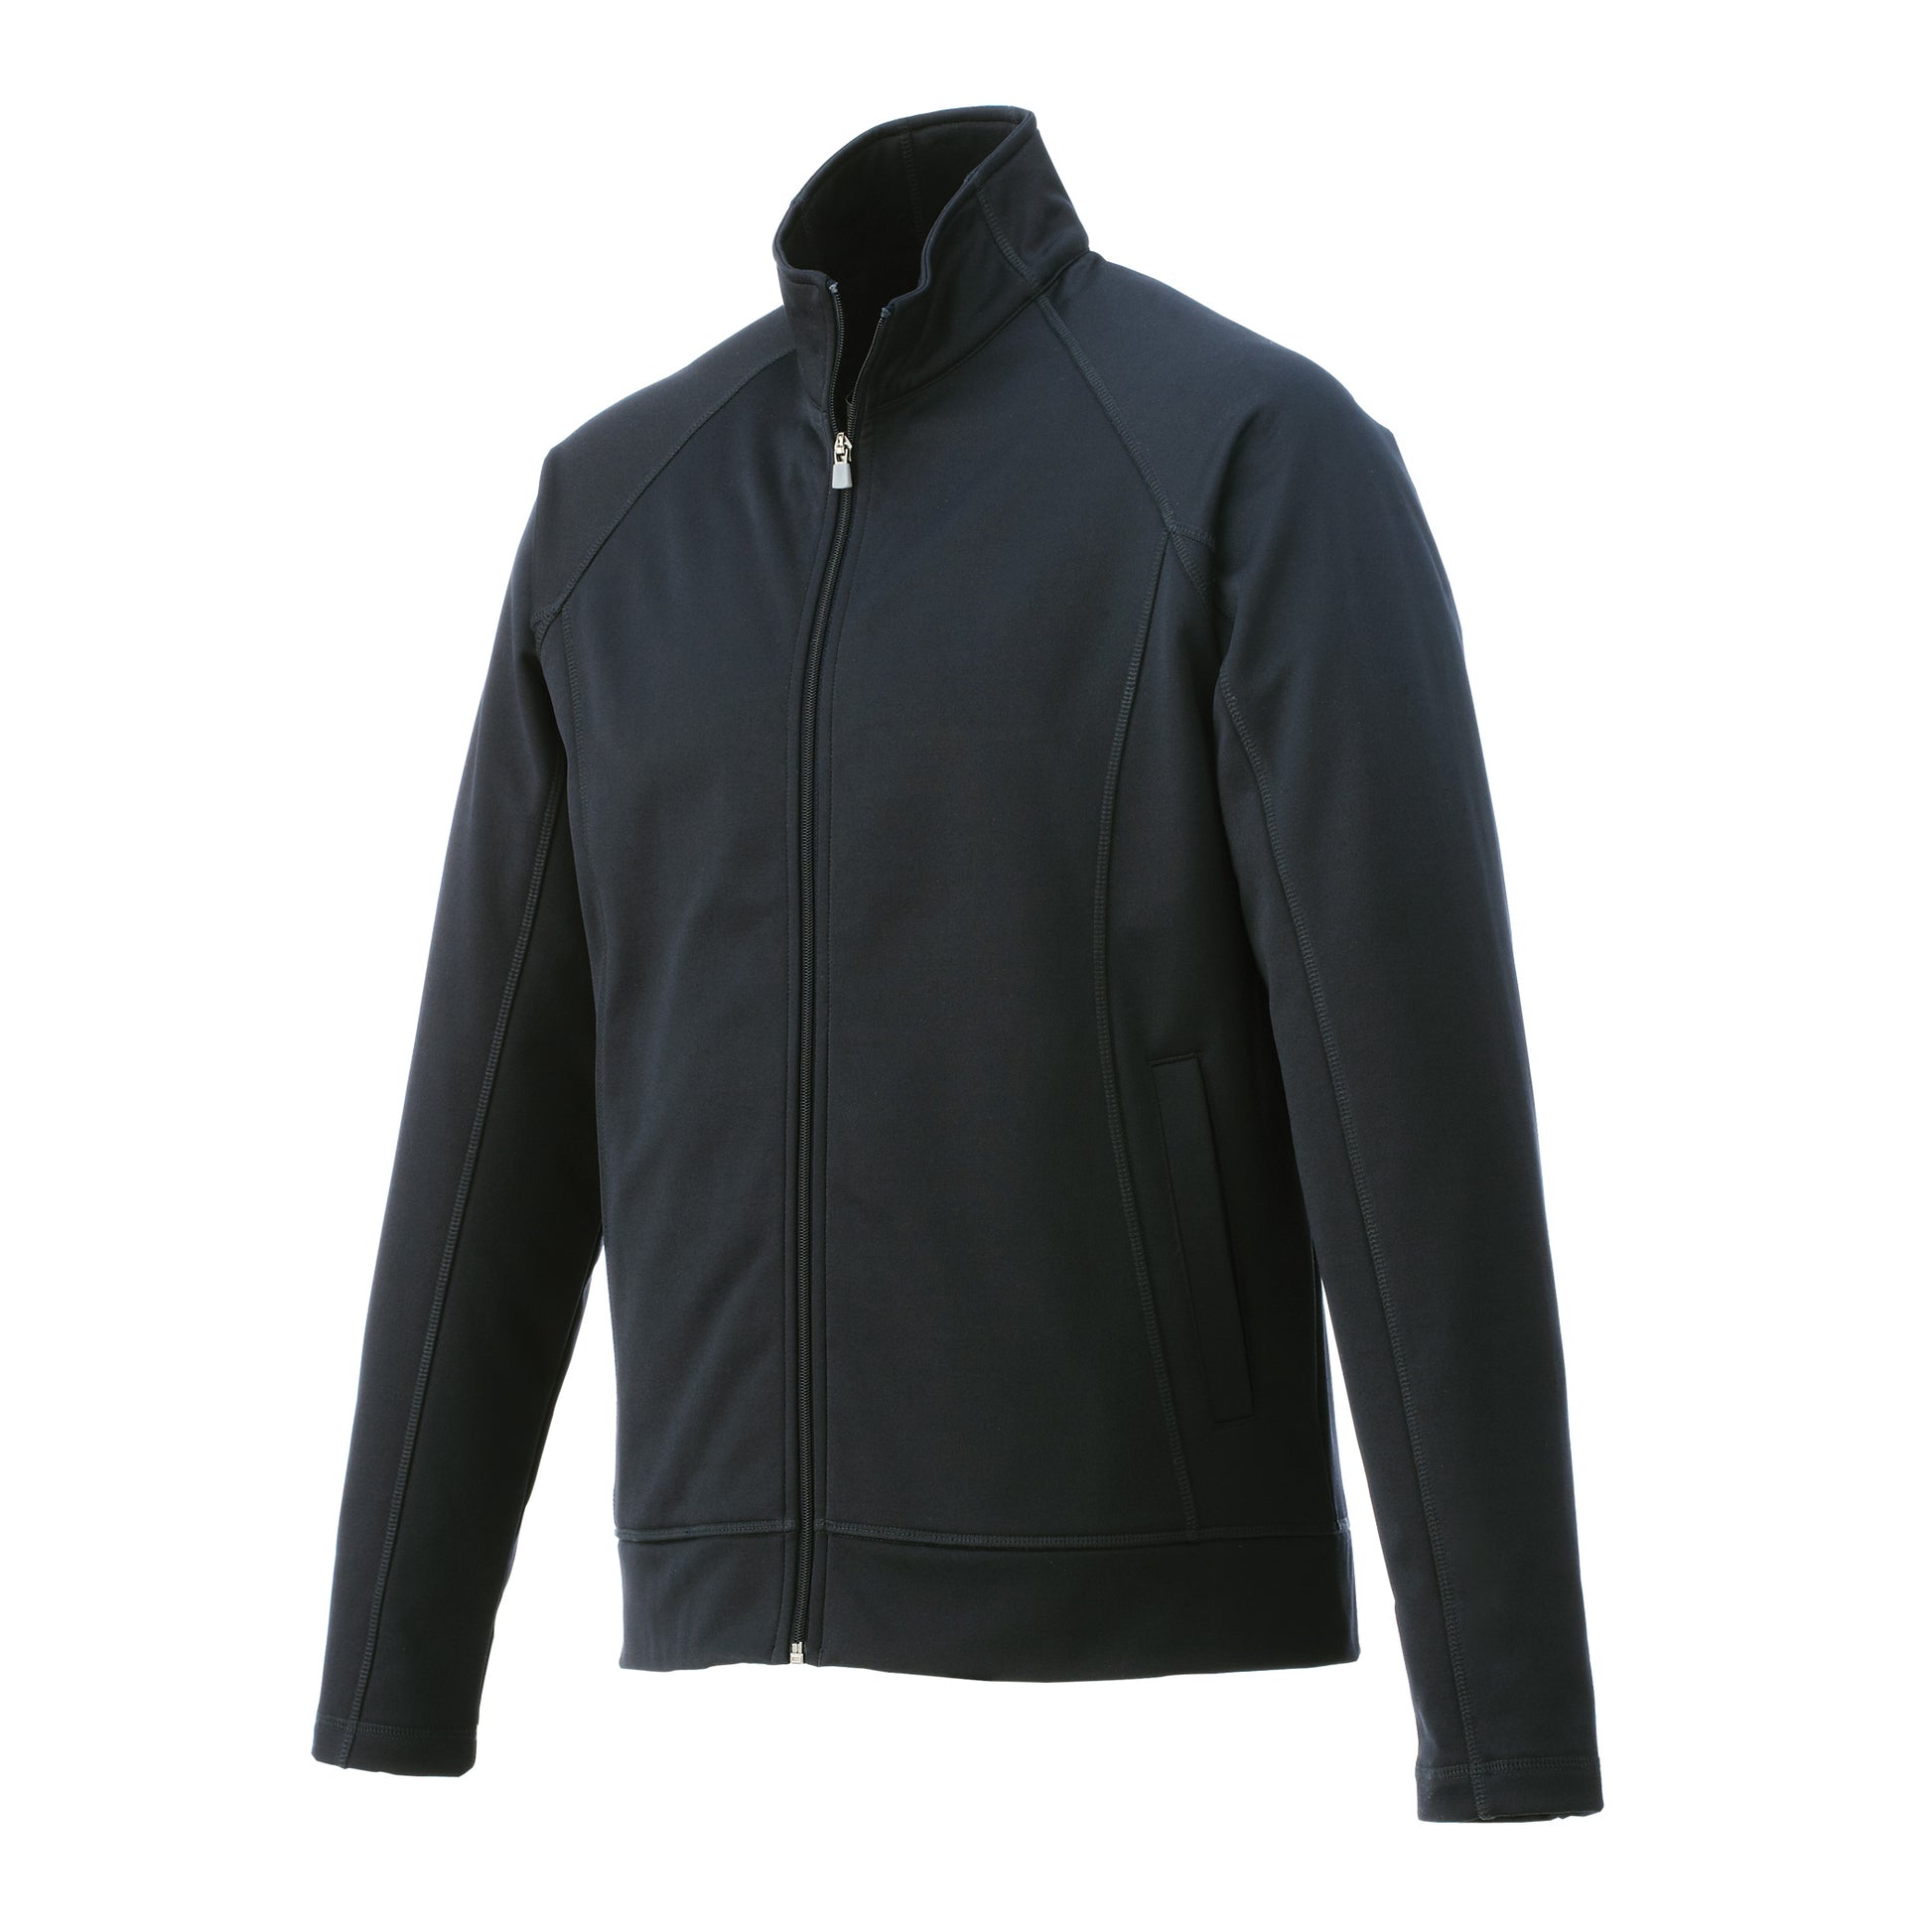 Veste de travail 100 % tricot de jersey pour homme Uniformes Sélect #18117 noir